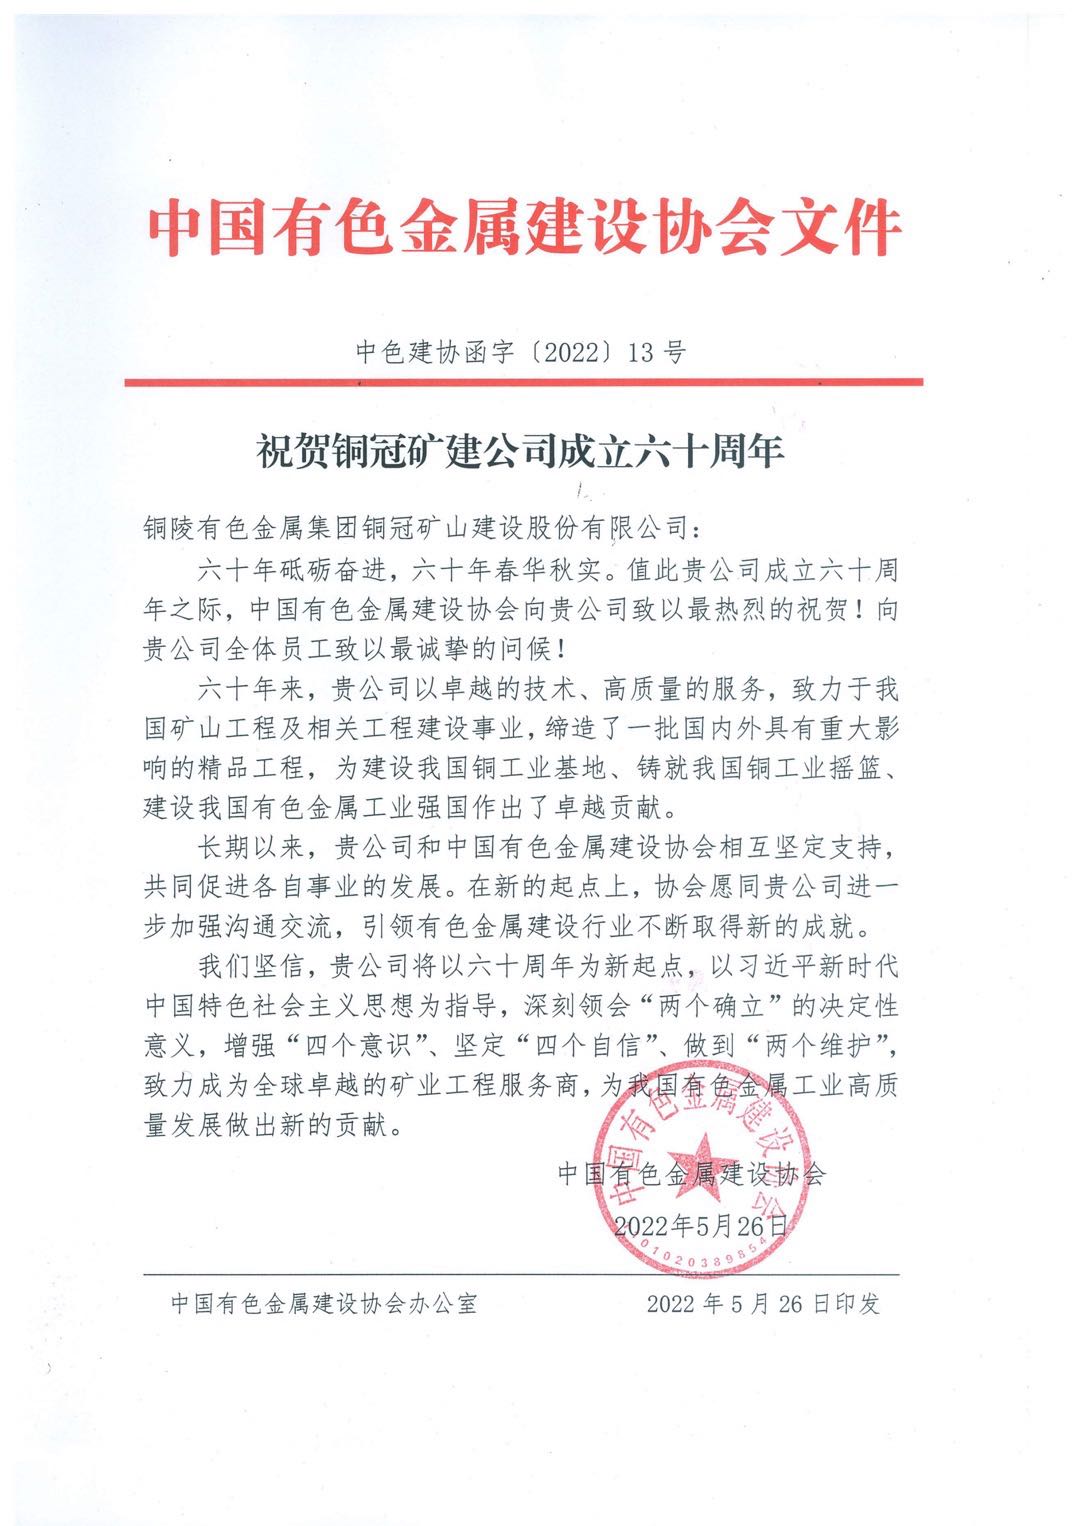 中国有色金属建设协会发来贺信